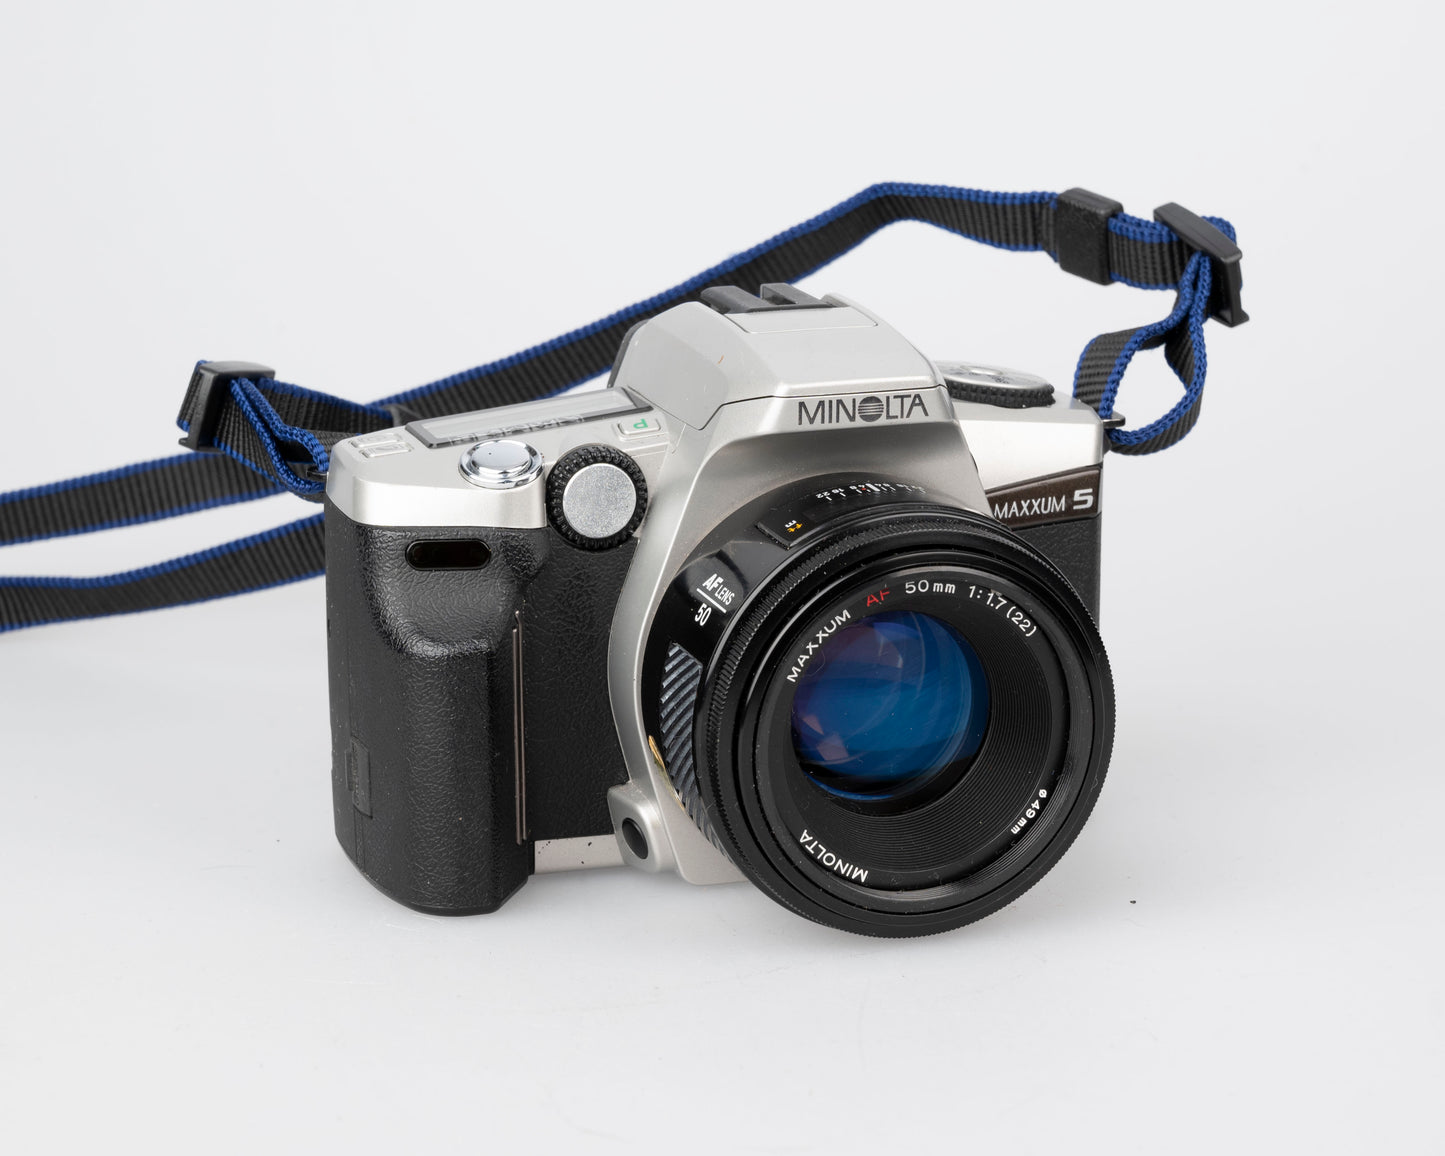 Minolta Maxxum 5 35mm SLR w/ 50mm f1.7 lens + manuals + original box